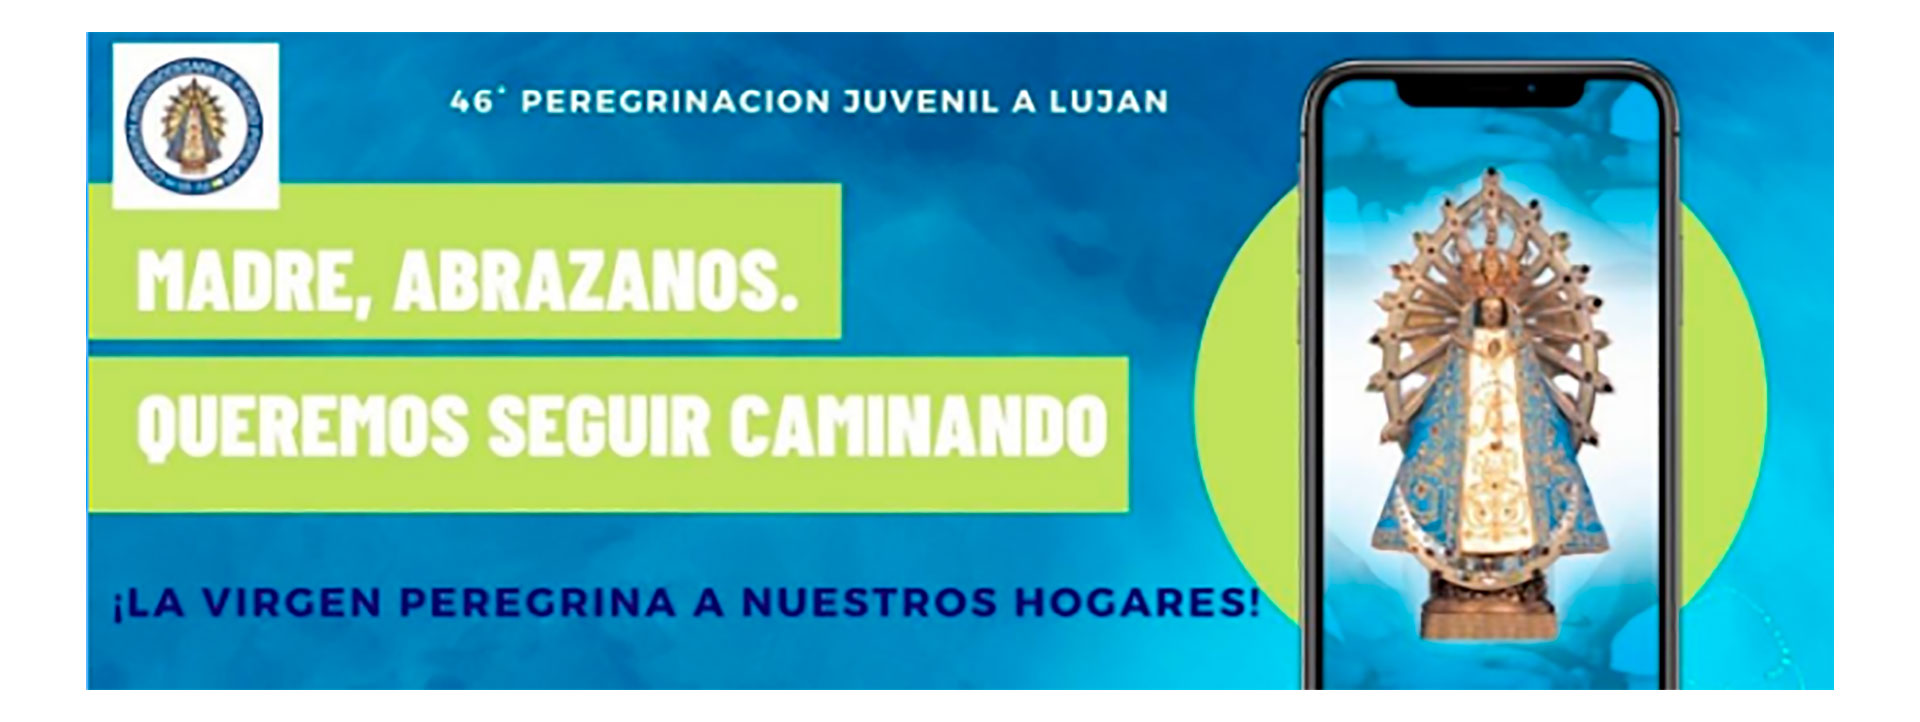 El lema de la Peregrinación juvenil a Luján 2020, que será virtual